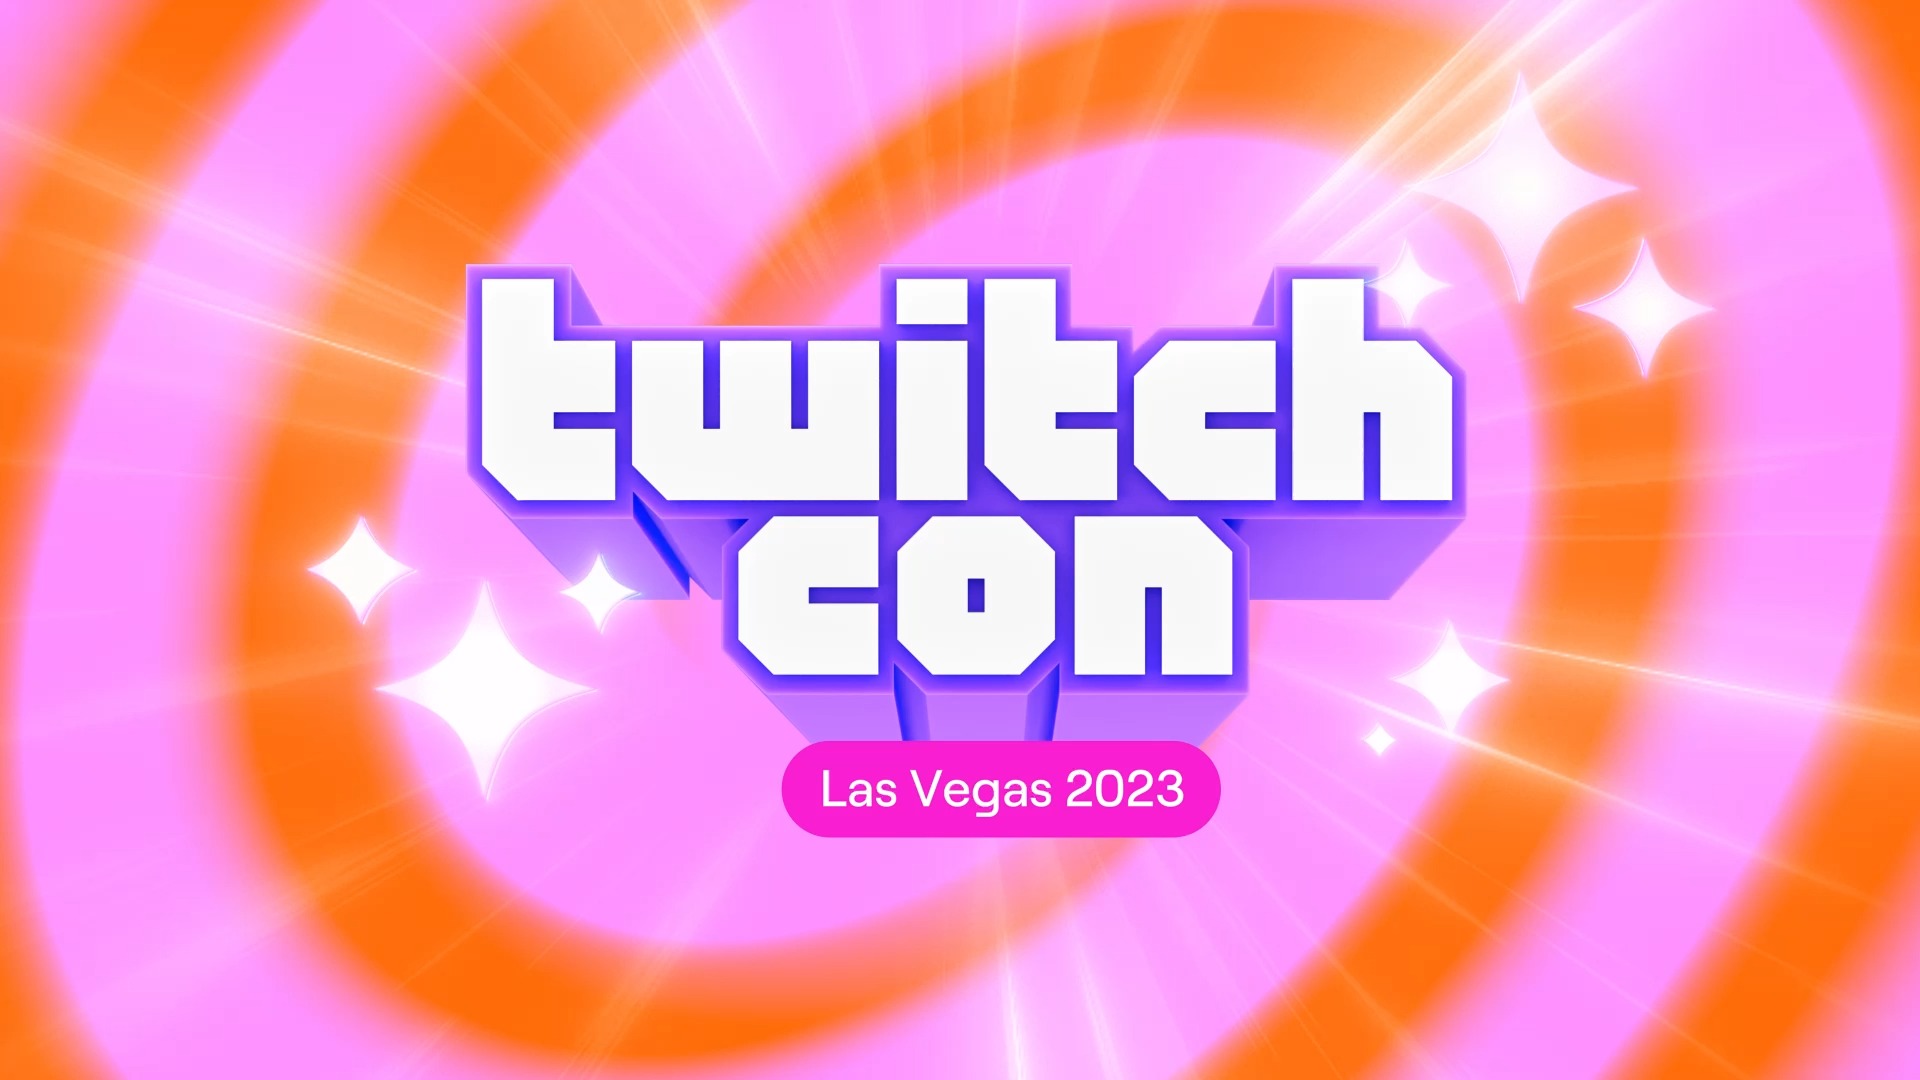 TwitchCon 2023 Paris & Las Vegas Schedule, Locations & Dates